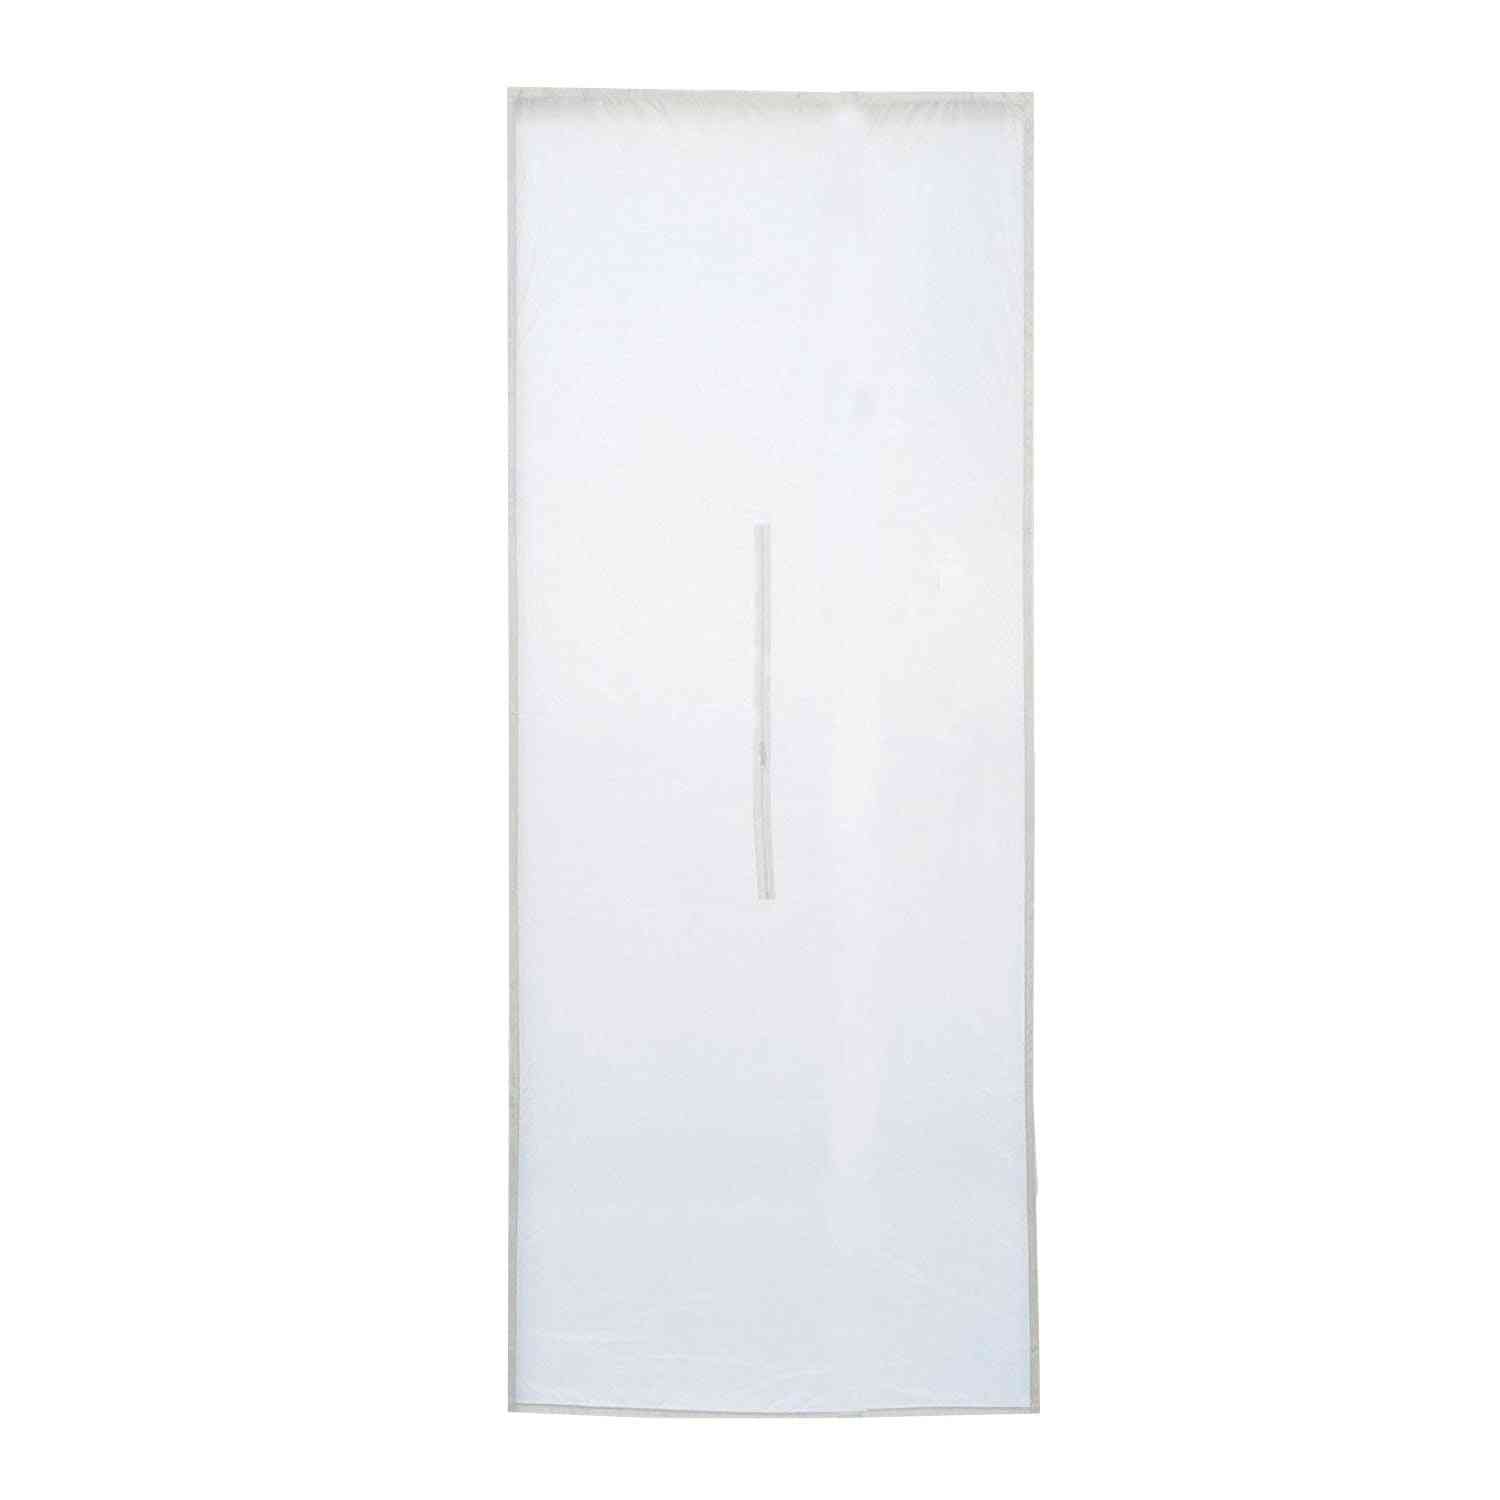 Joint de porte de sas pour climatiseurs mobiles - sécheurs d'air extrait (blanc) -